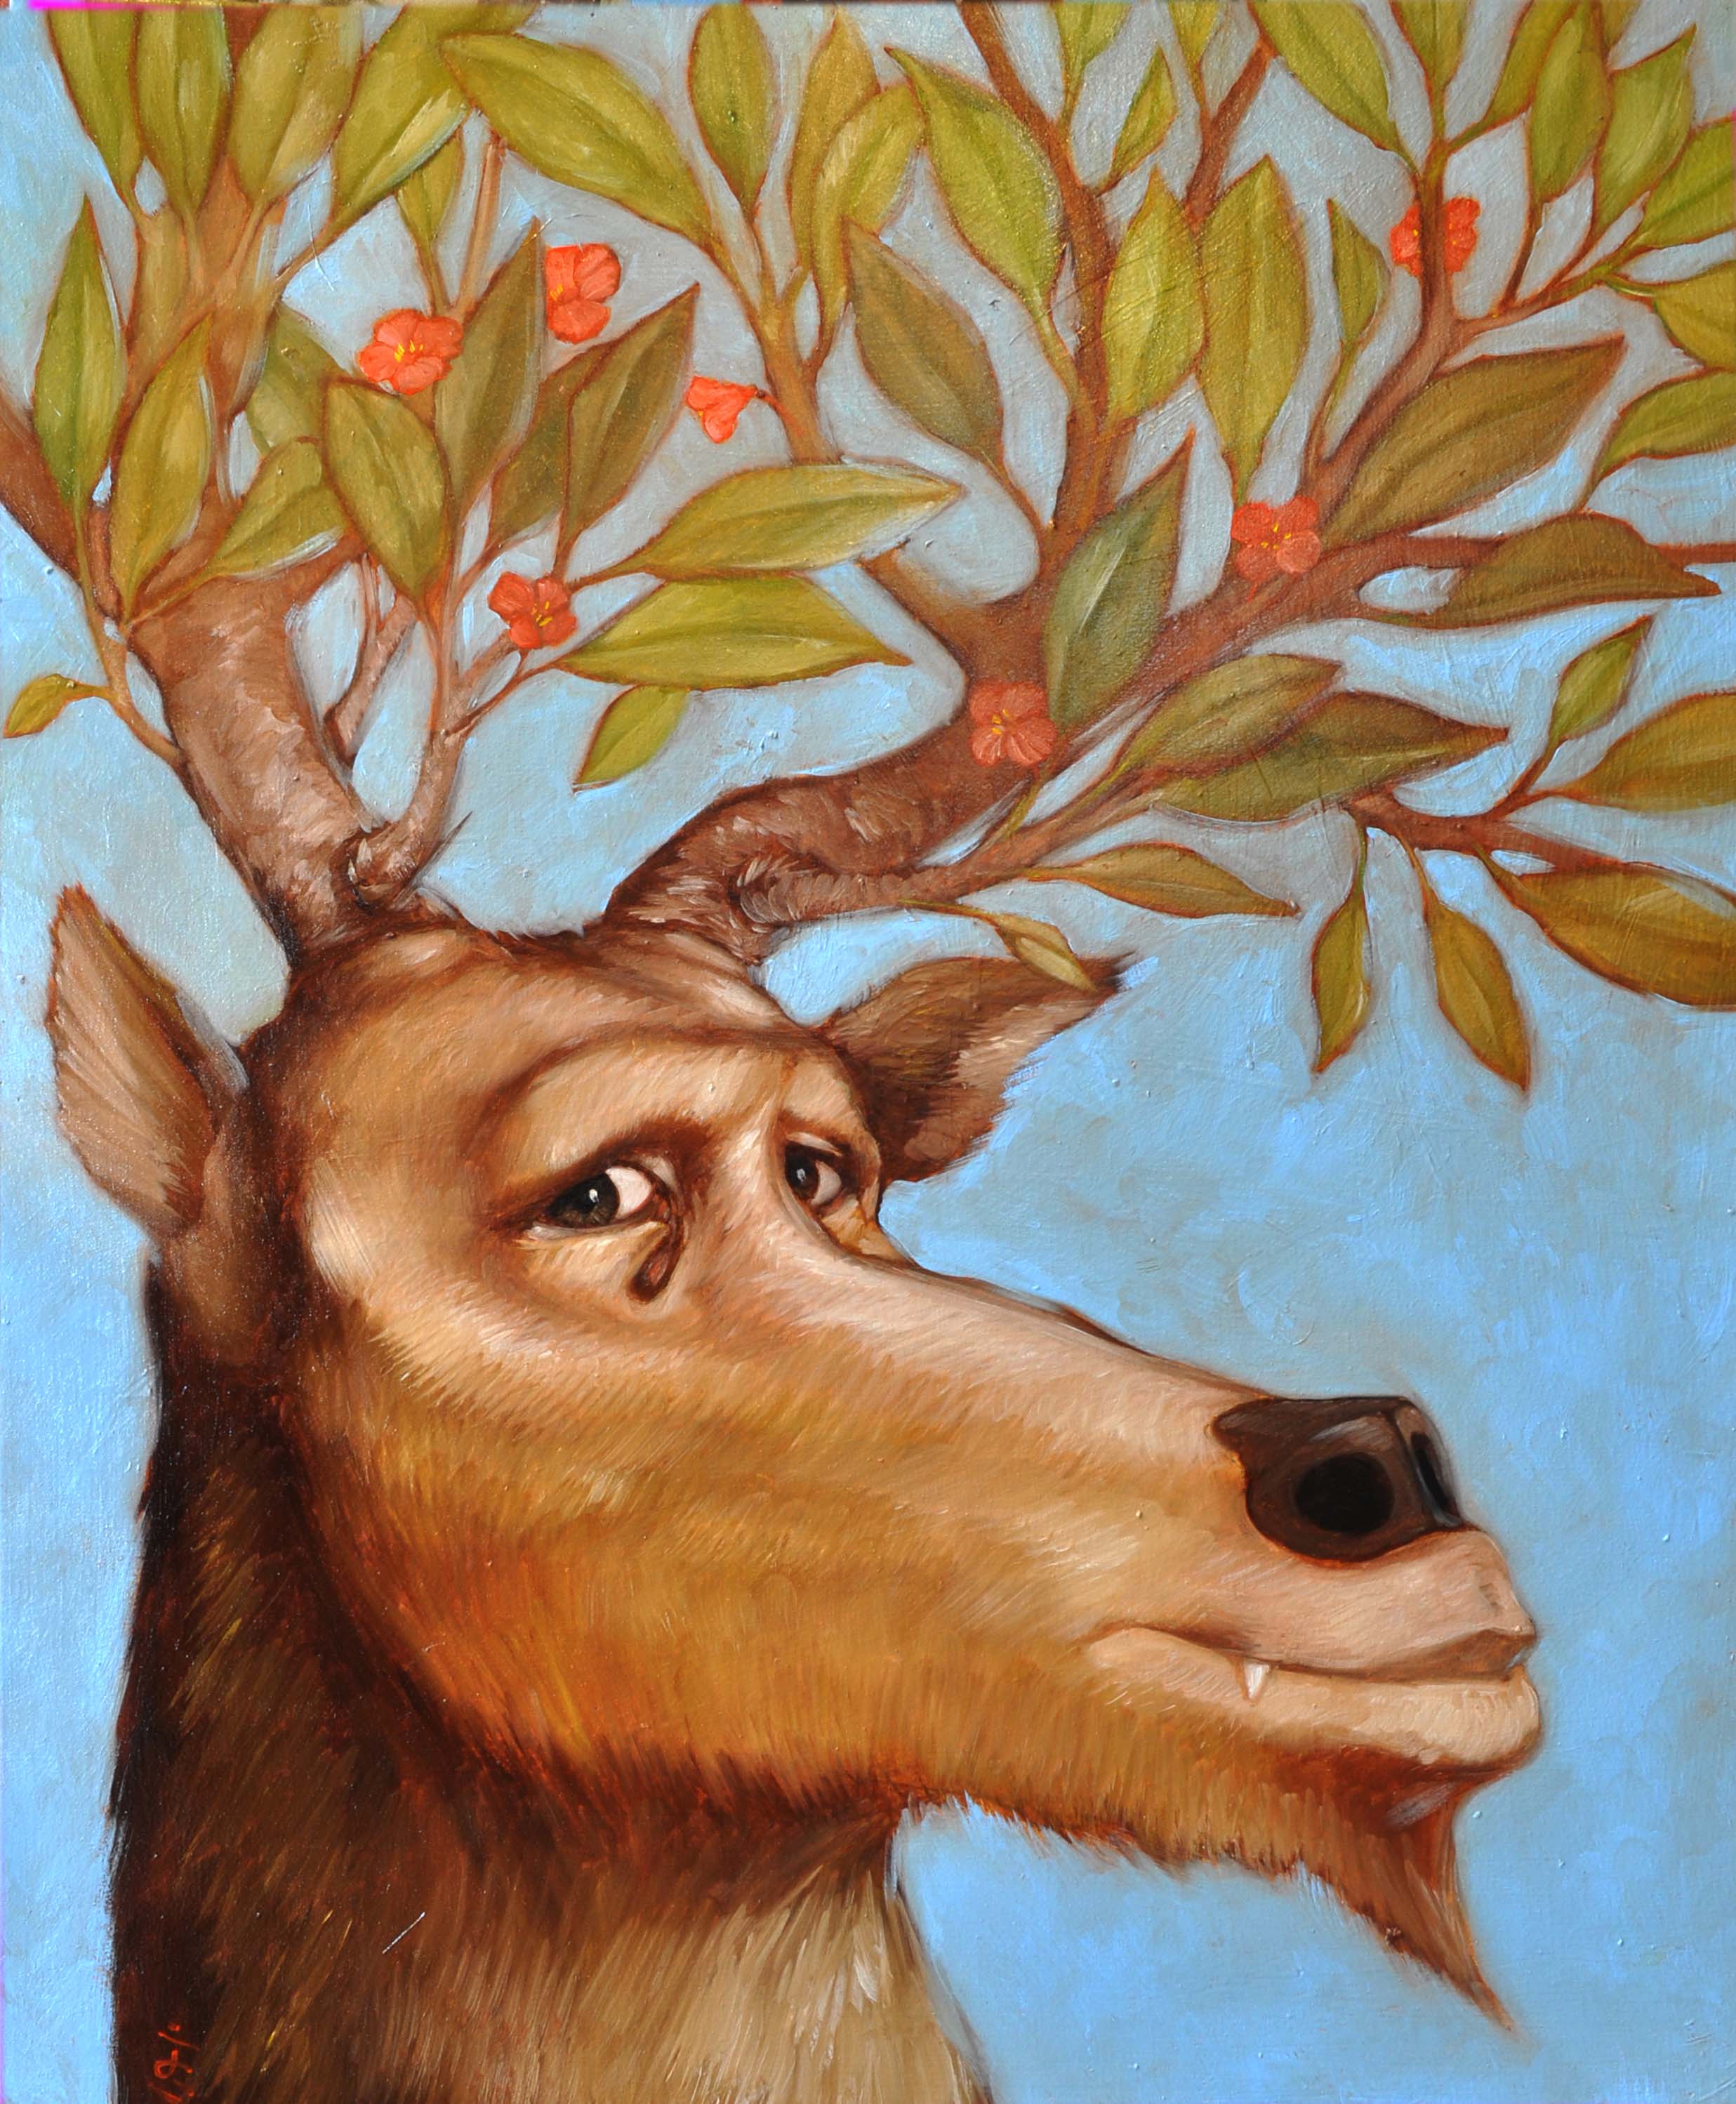 Sur un fond bleu pâle, une tête de cerf, de trois-quart, dont les traits évoquent l'humain. Ses yeux sont ceux d'un humain, qui regarde le spectateur. Il arbore un léger sourire et la pointe d'une canine dépasse de ses lèvres. Ses cornes sont des petits arbres couverts de feuilles et de fleurs rouges.